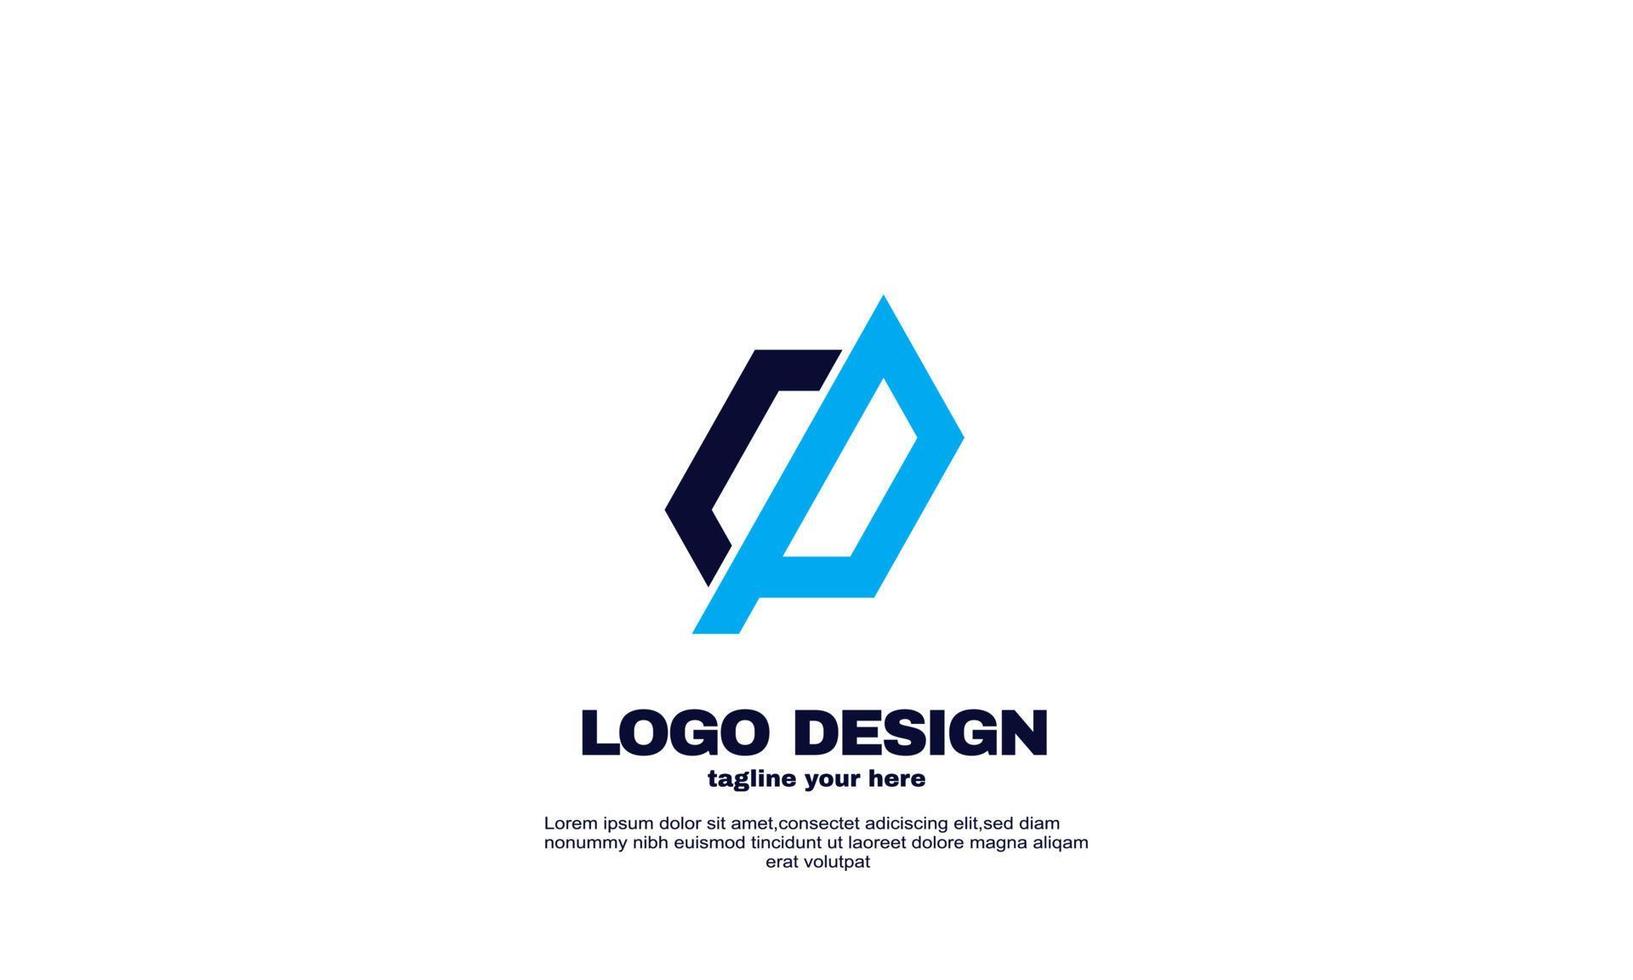 diseño de marca y negocio de empresa corporativa de logotipo de red simple impresionante vector